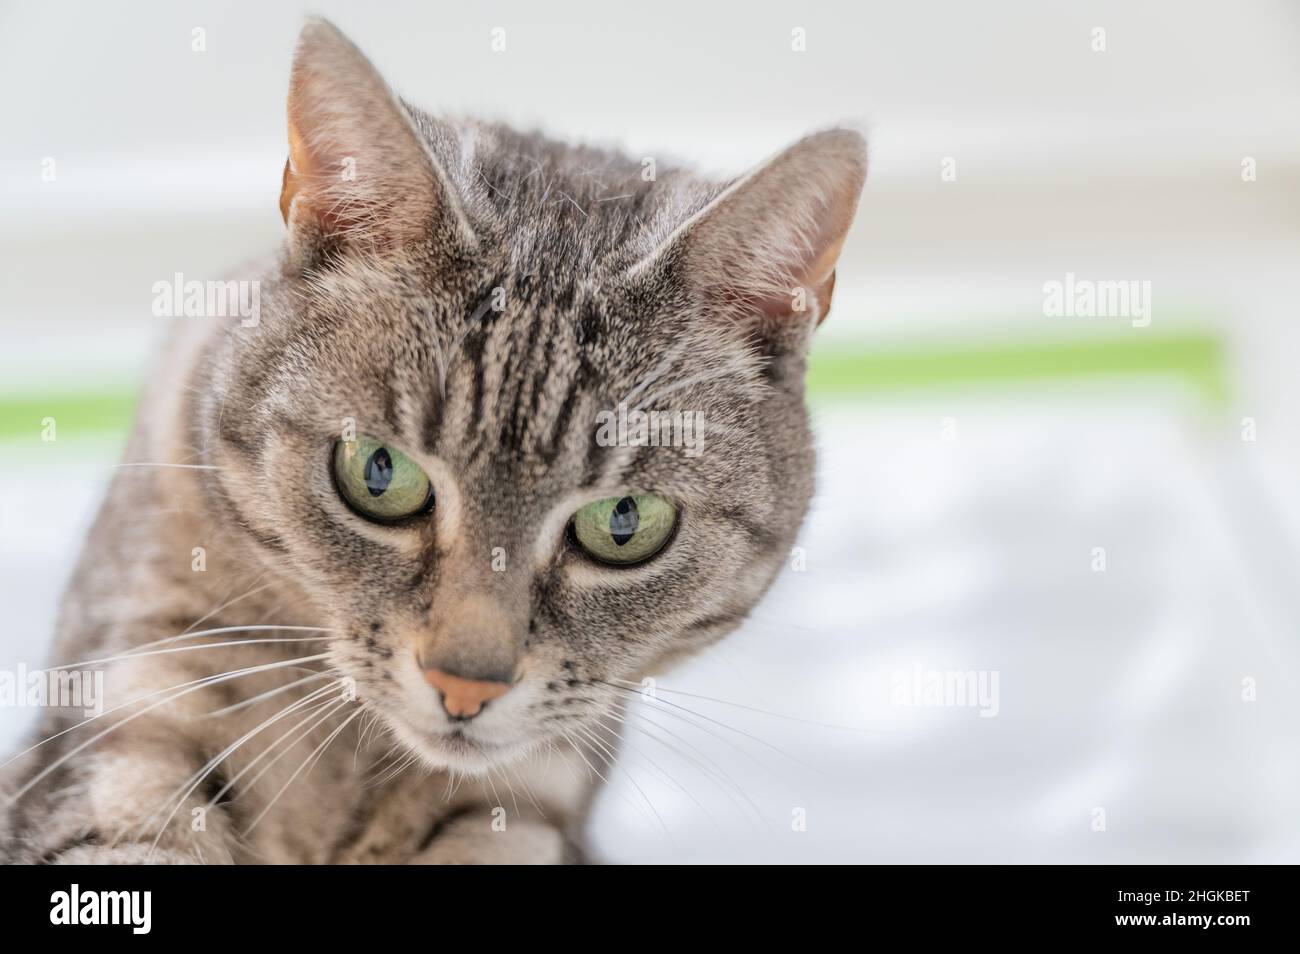 Portrait de chat domestique européen gris avec des rayures noires et des yeux verts Banque D'Images